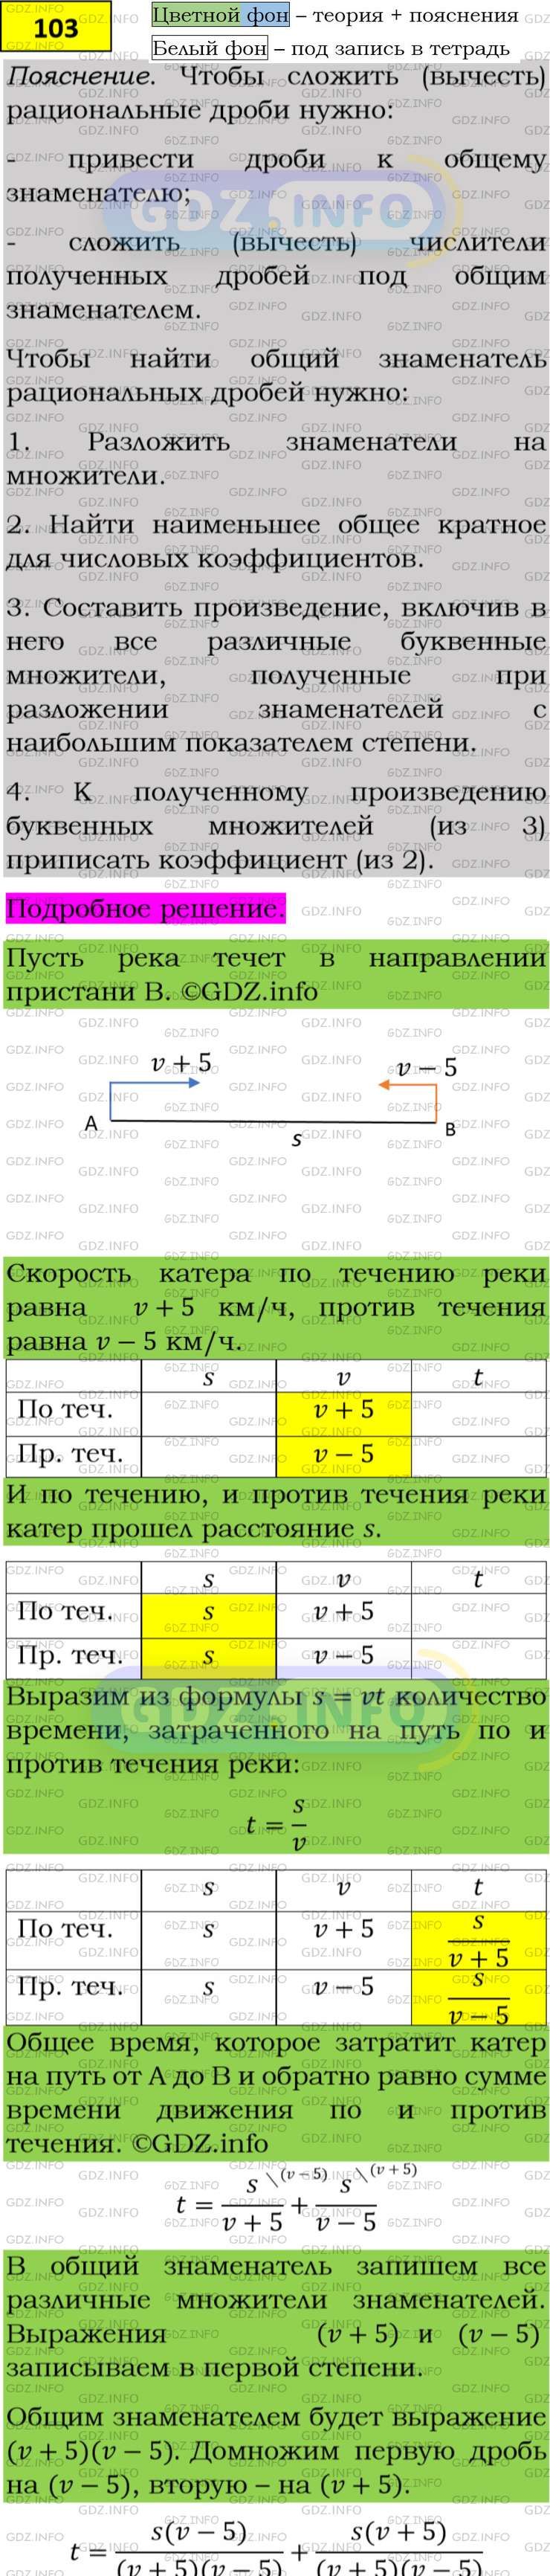 Фото подробного решения: Номер задания №103 из ГДЗ по Алгебре 8 класс: Макарычев Ю.Н.